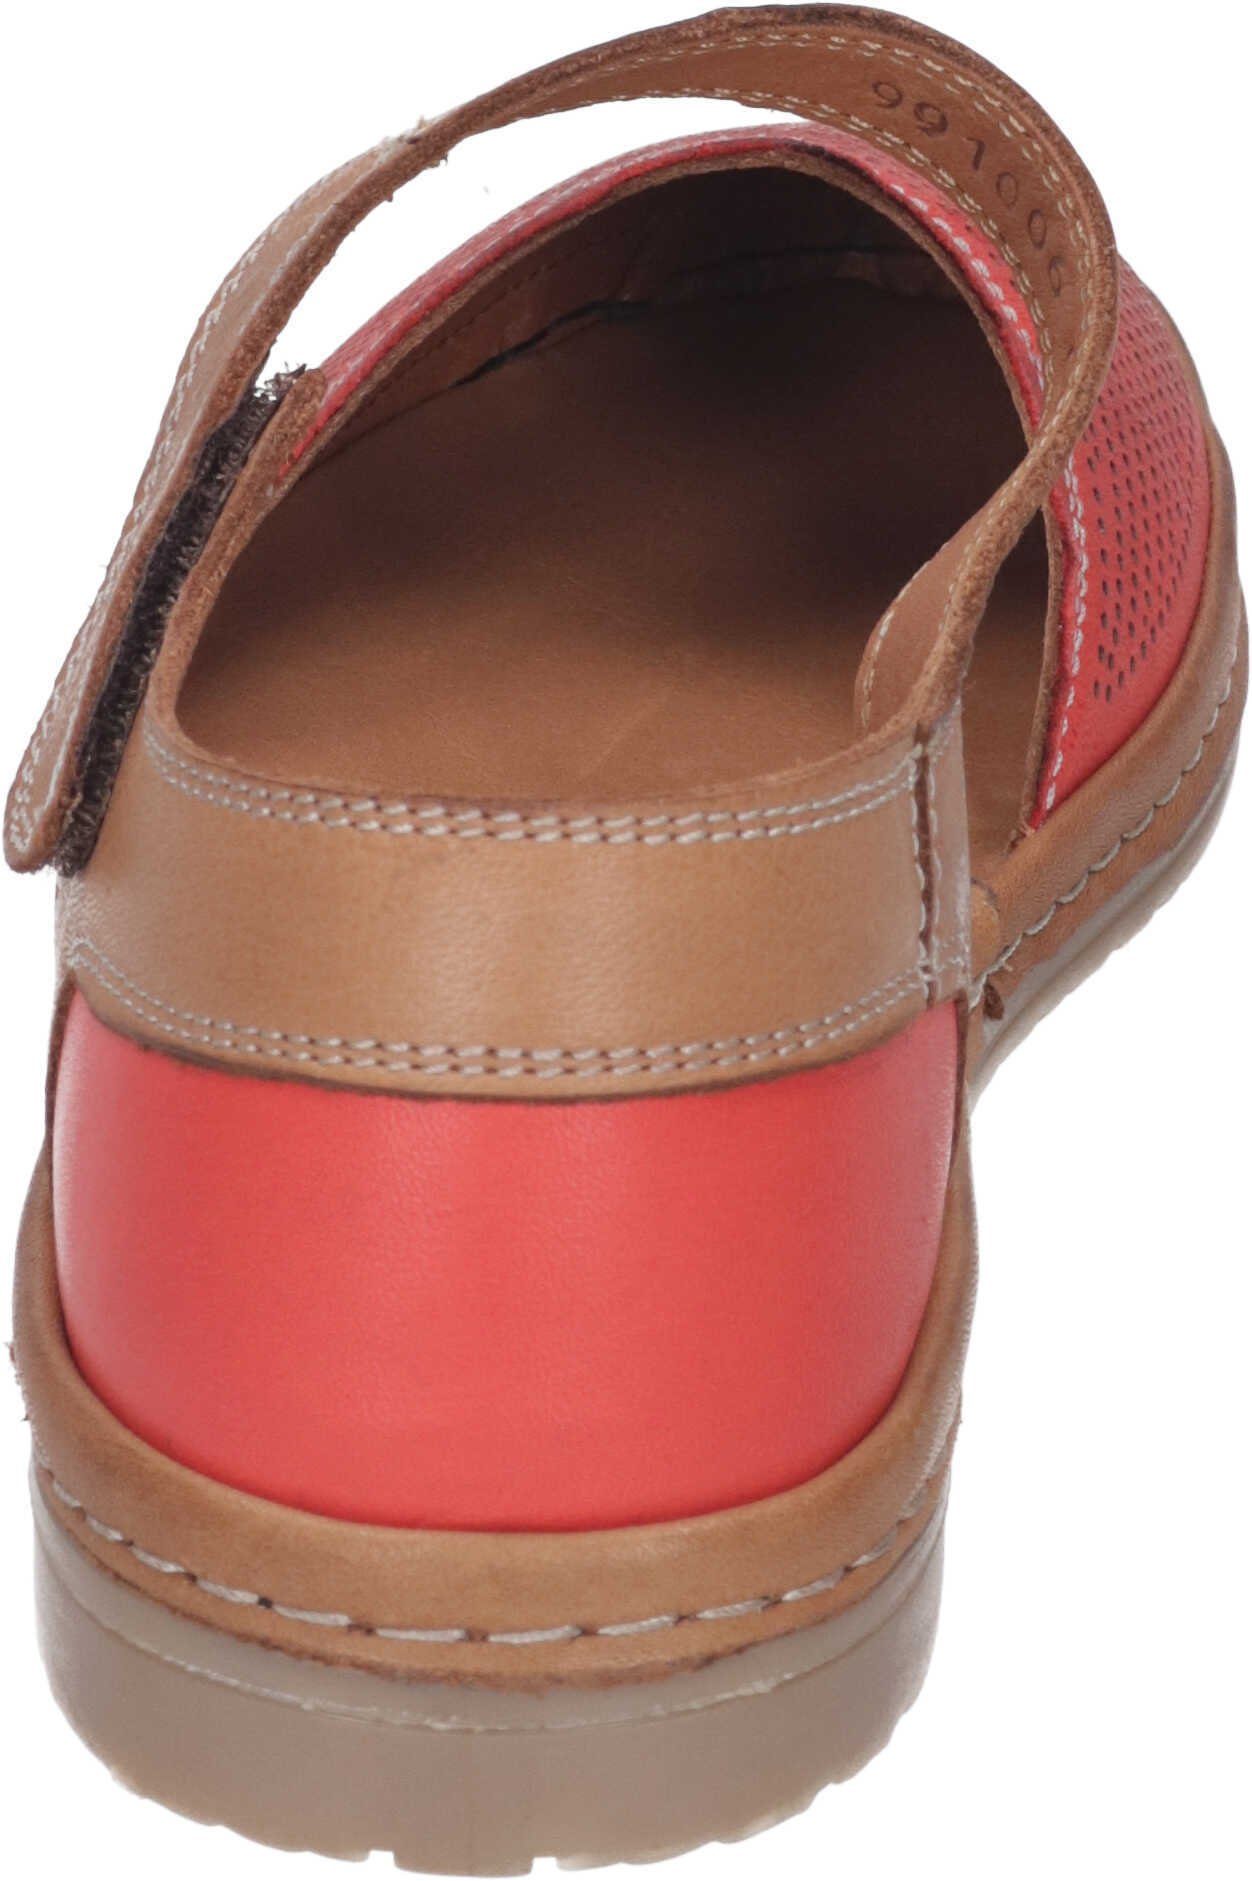 Manitu Sandalen Sandalette aus echtem Leder rot